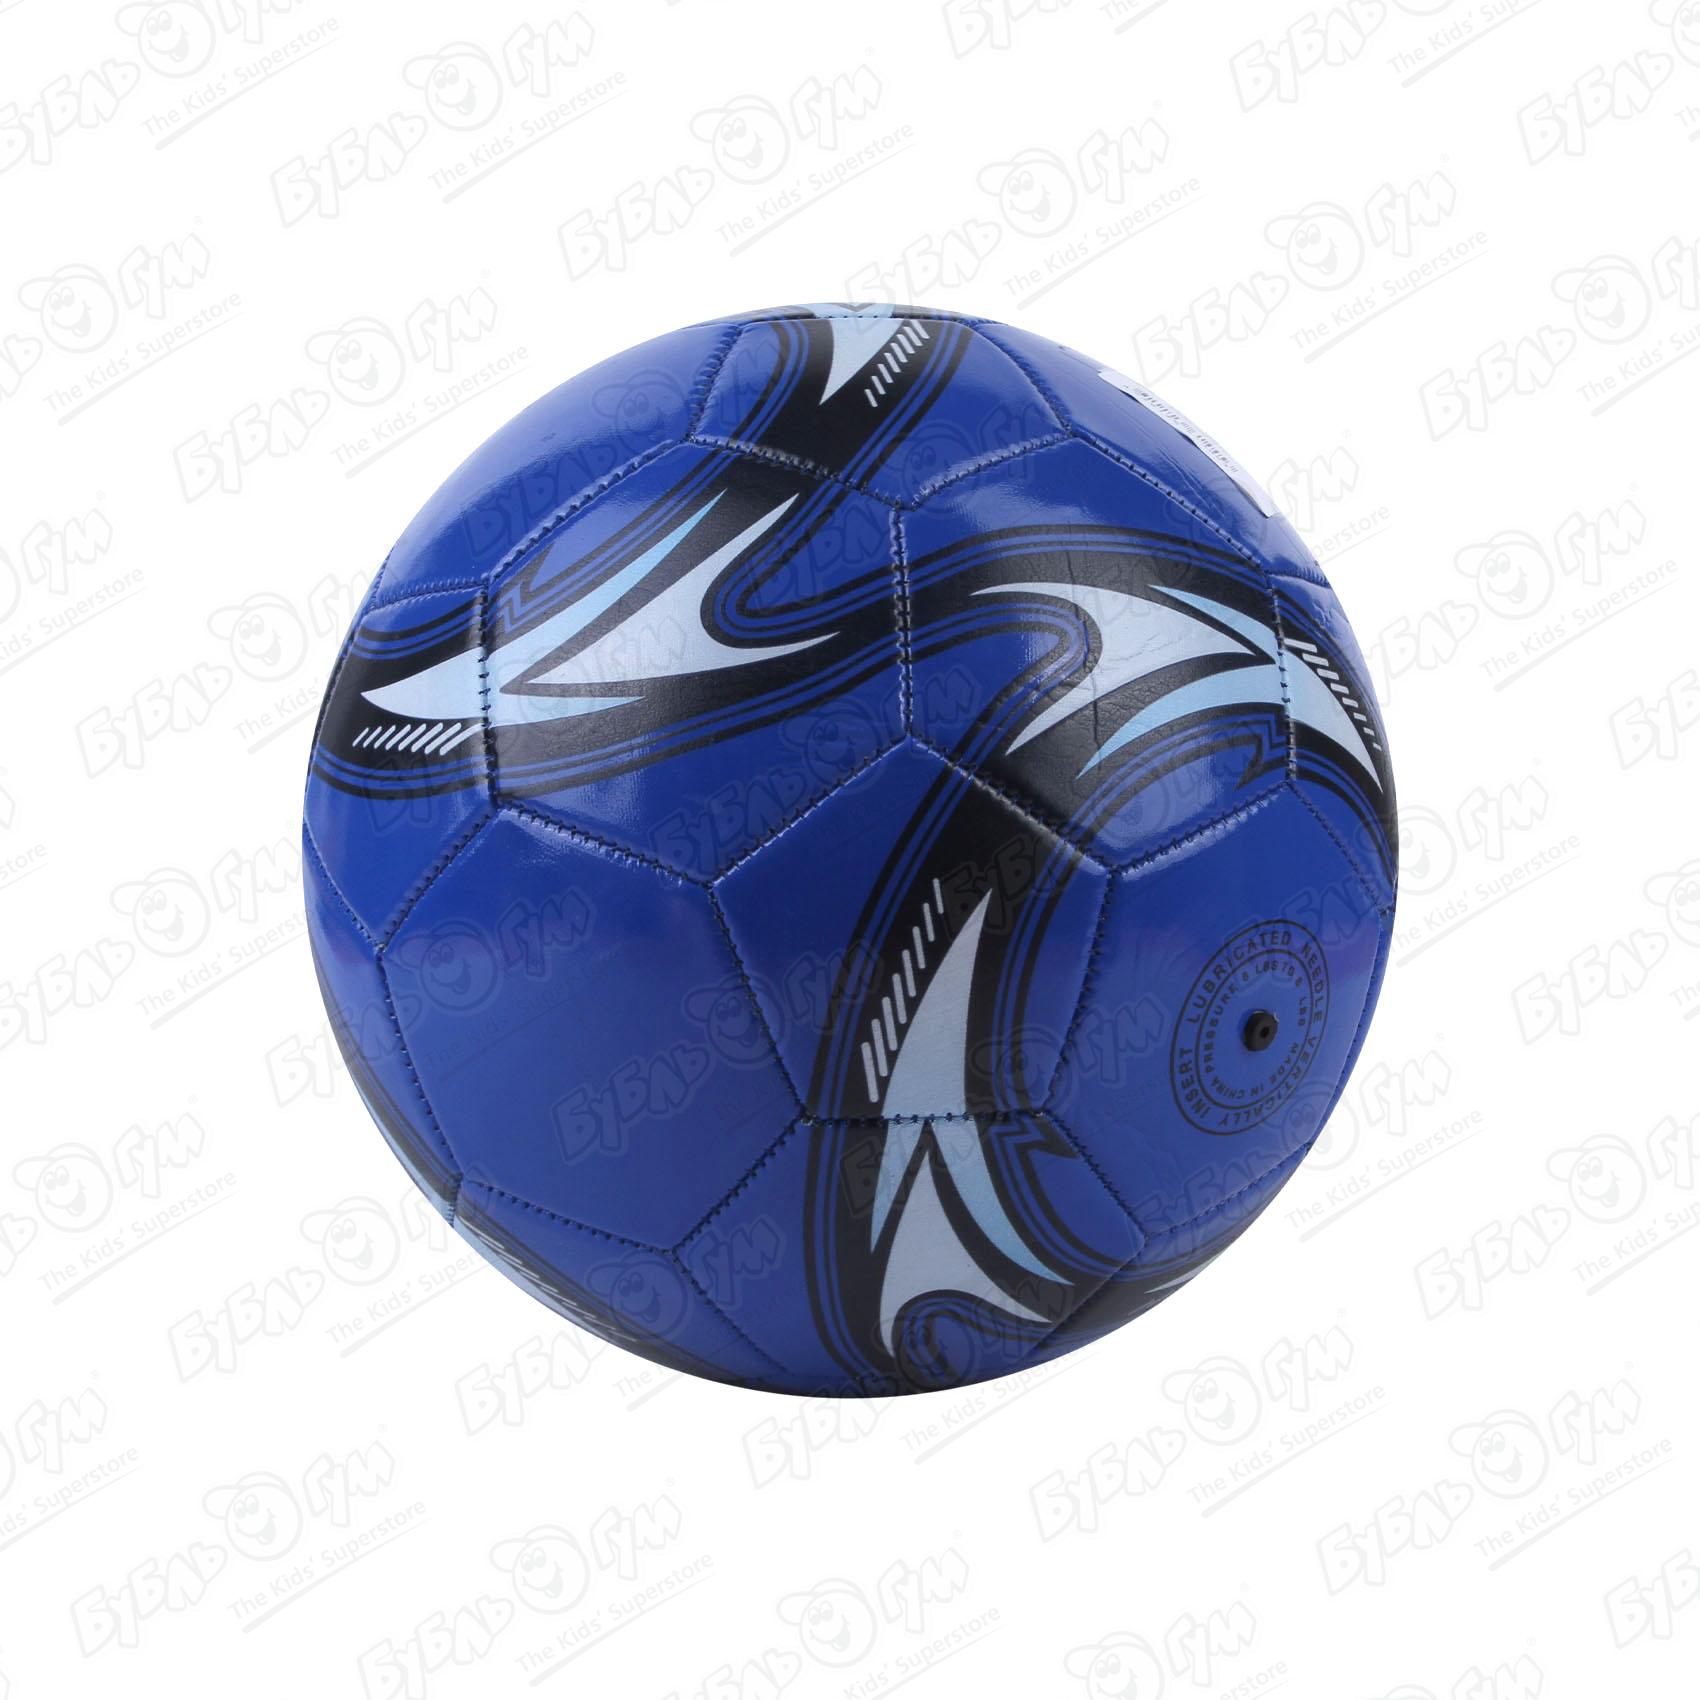 Мяч футбольный размер 5 в ассортименте - фото 2